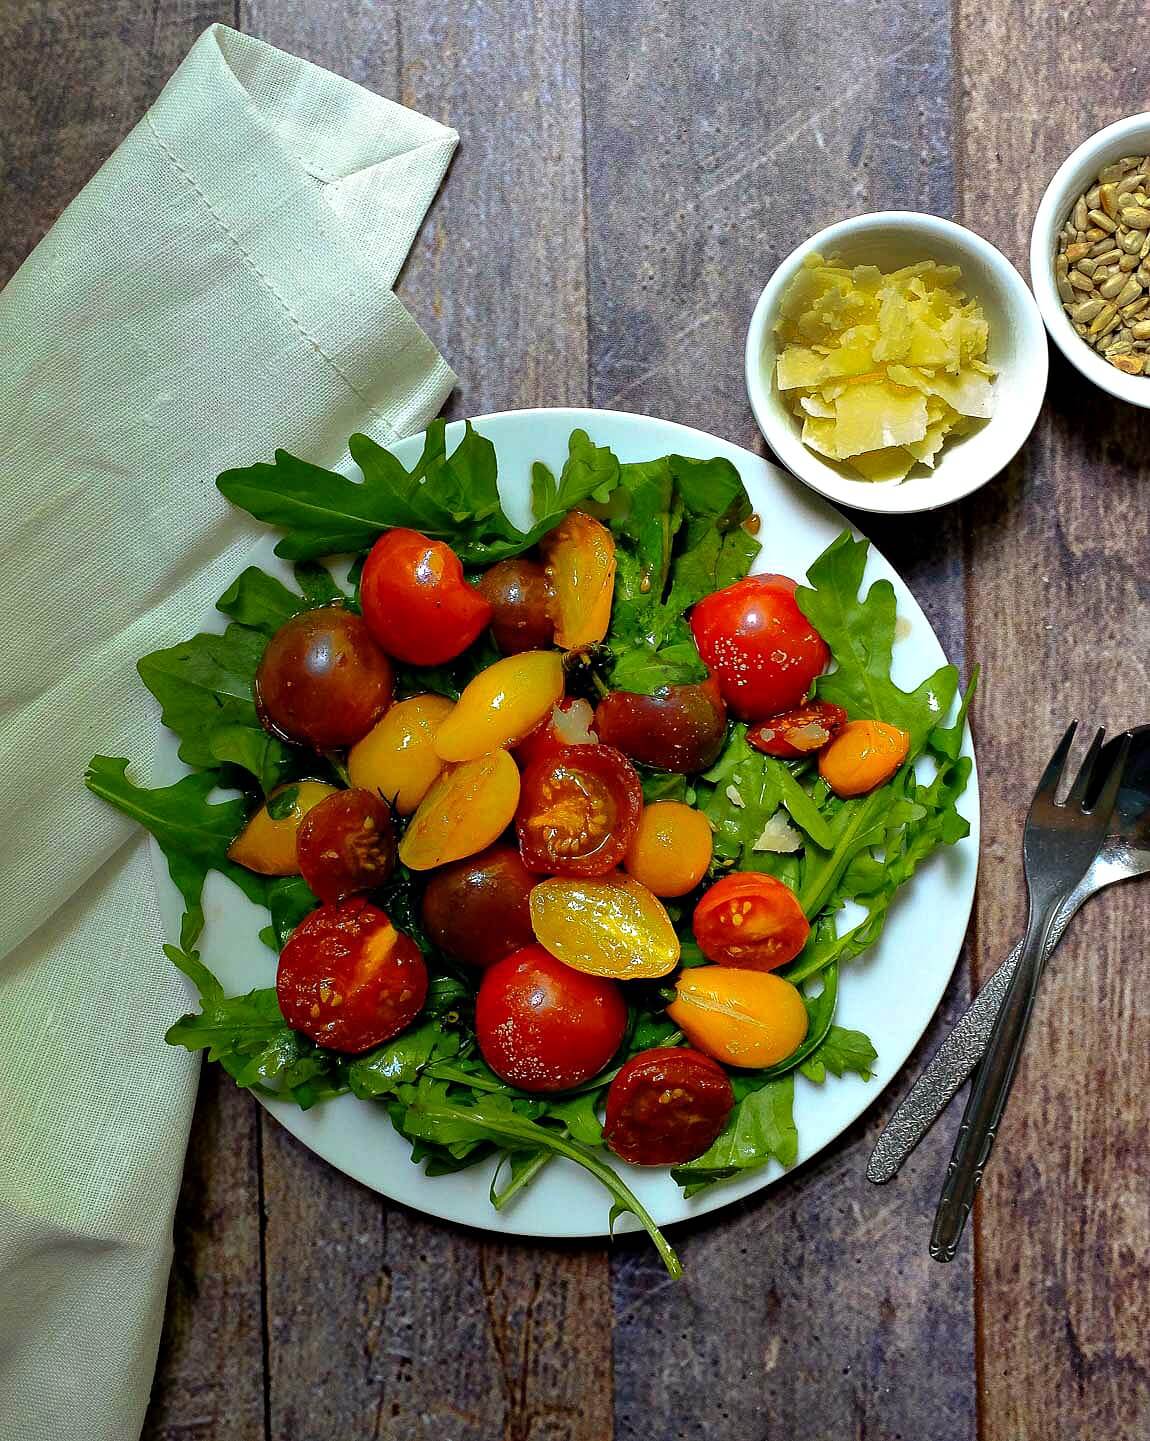 Dieser 15 - Minuten-Salat mit karamellisierten Tomaten, Rucola und Parmesan ist ein aromatischer Gaumenschmaus. Weniger Aufwand - tolles Ergebnis